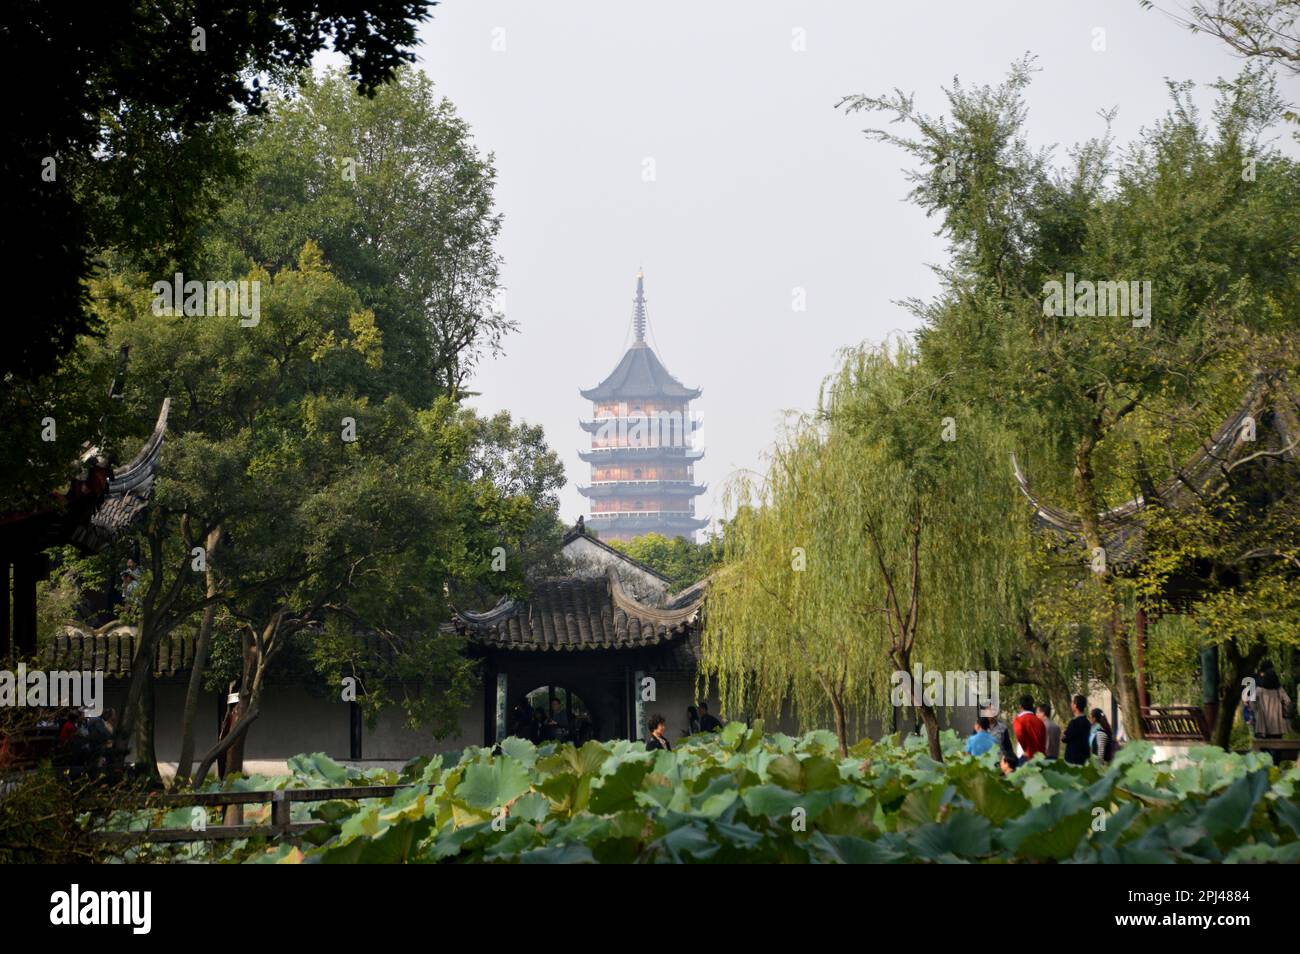 République populaire de Chine, province de Jiangsu, Suzhou: Jardin de l'humble Administrateur (Zhuozheng Yuan), construit dans la dynastie Ming (1509), la larg Banque D'Images